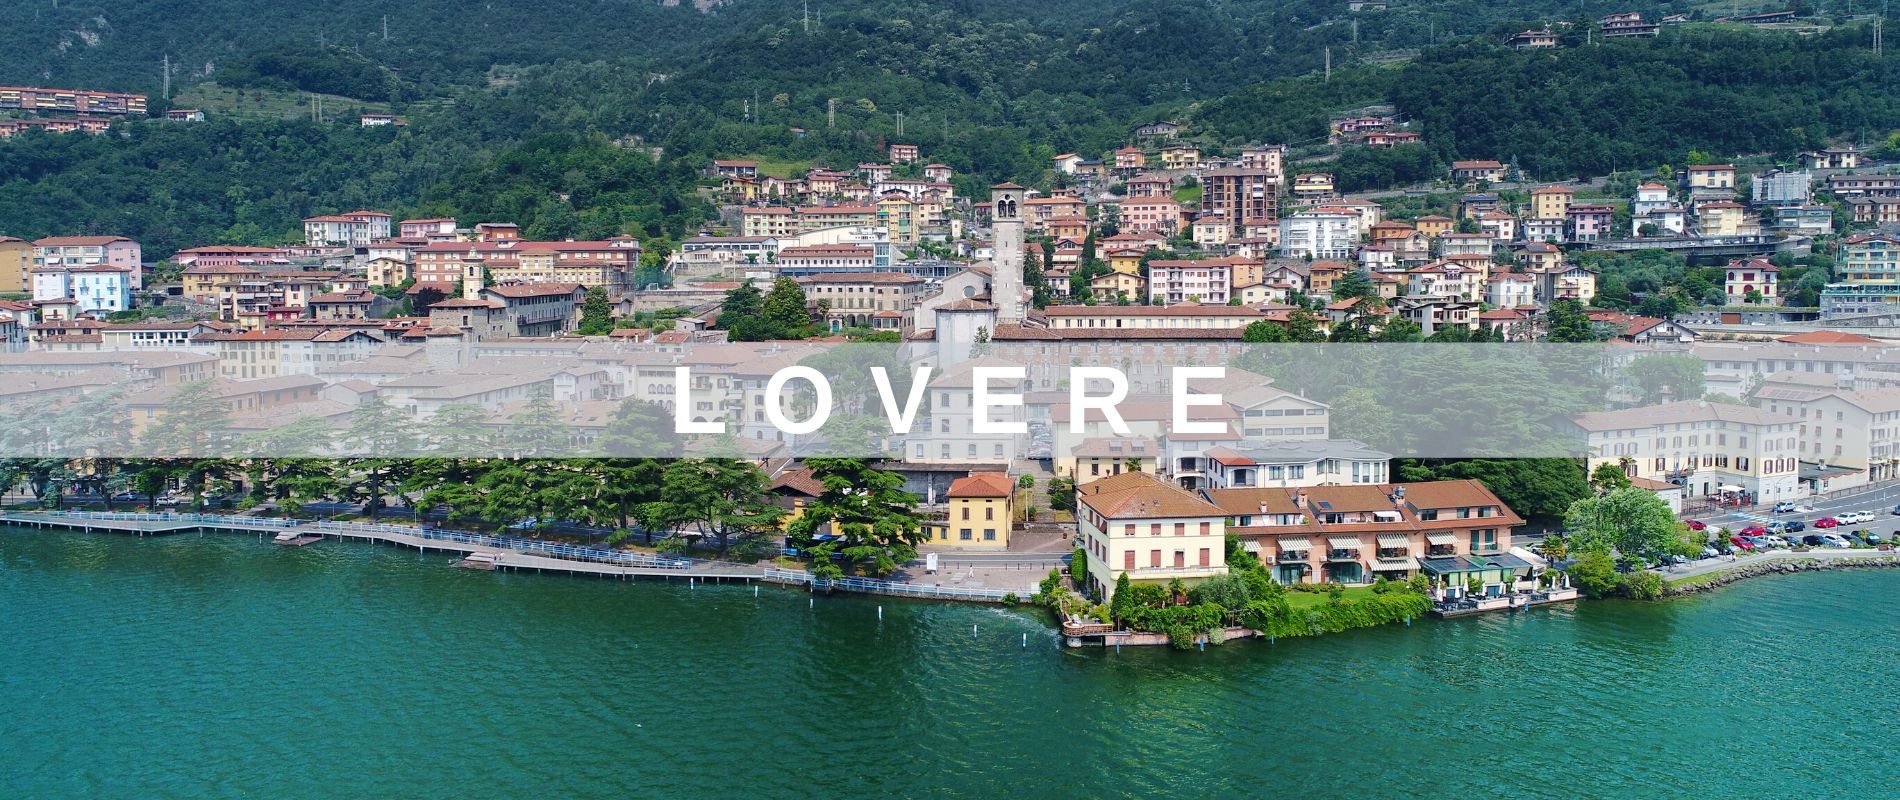 Vacanze Assistite per Anziani in Lombardia, a Lovere sul Lago